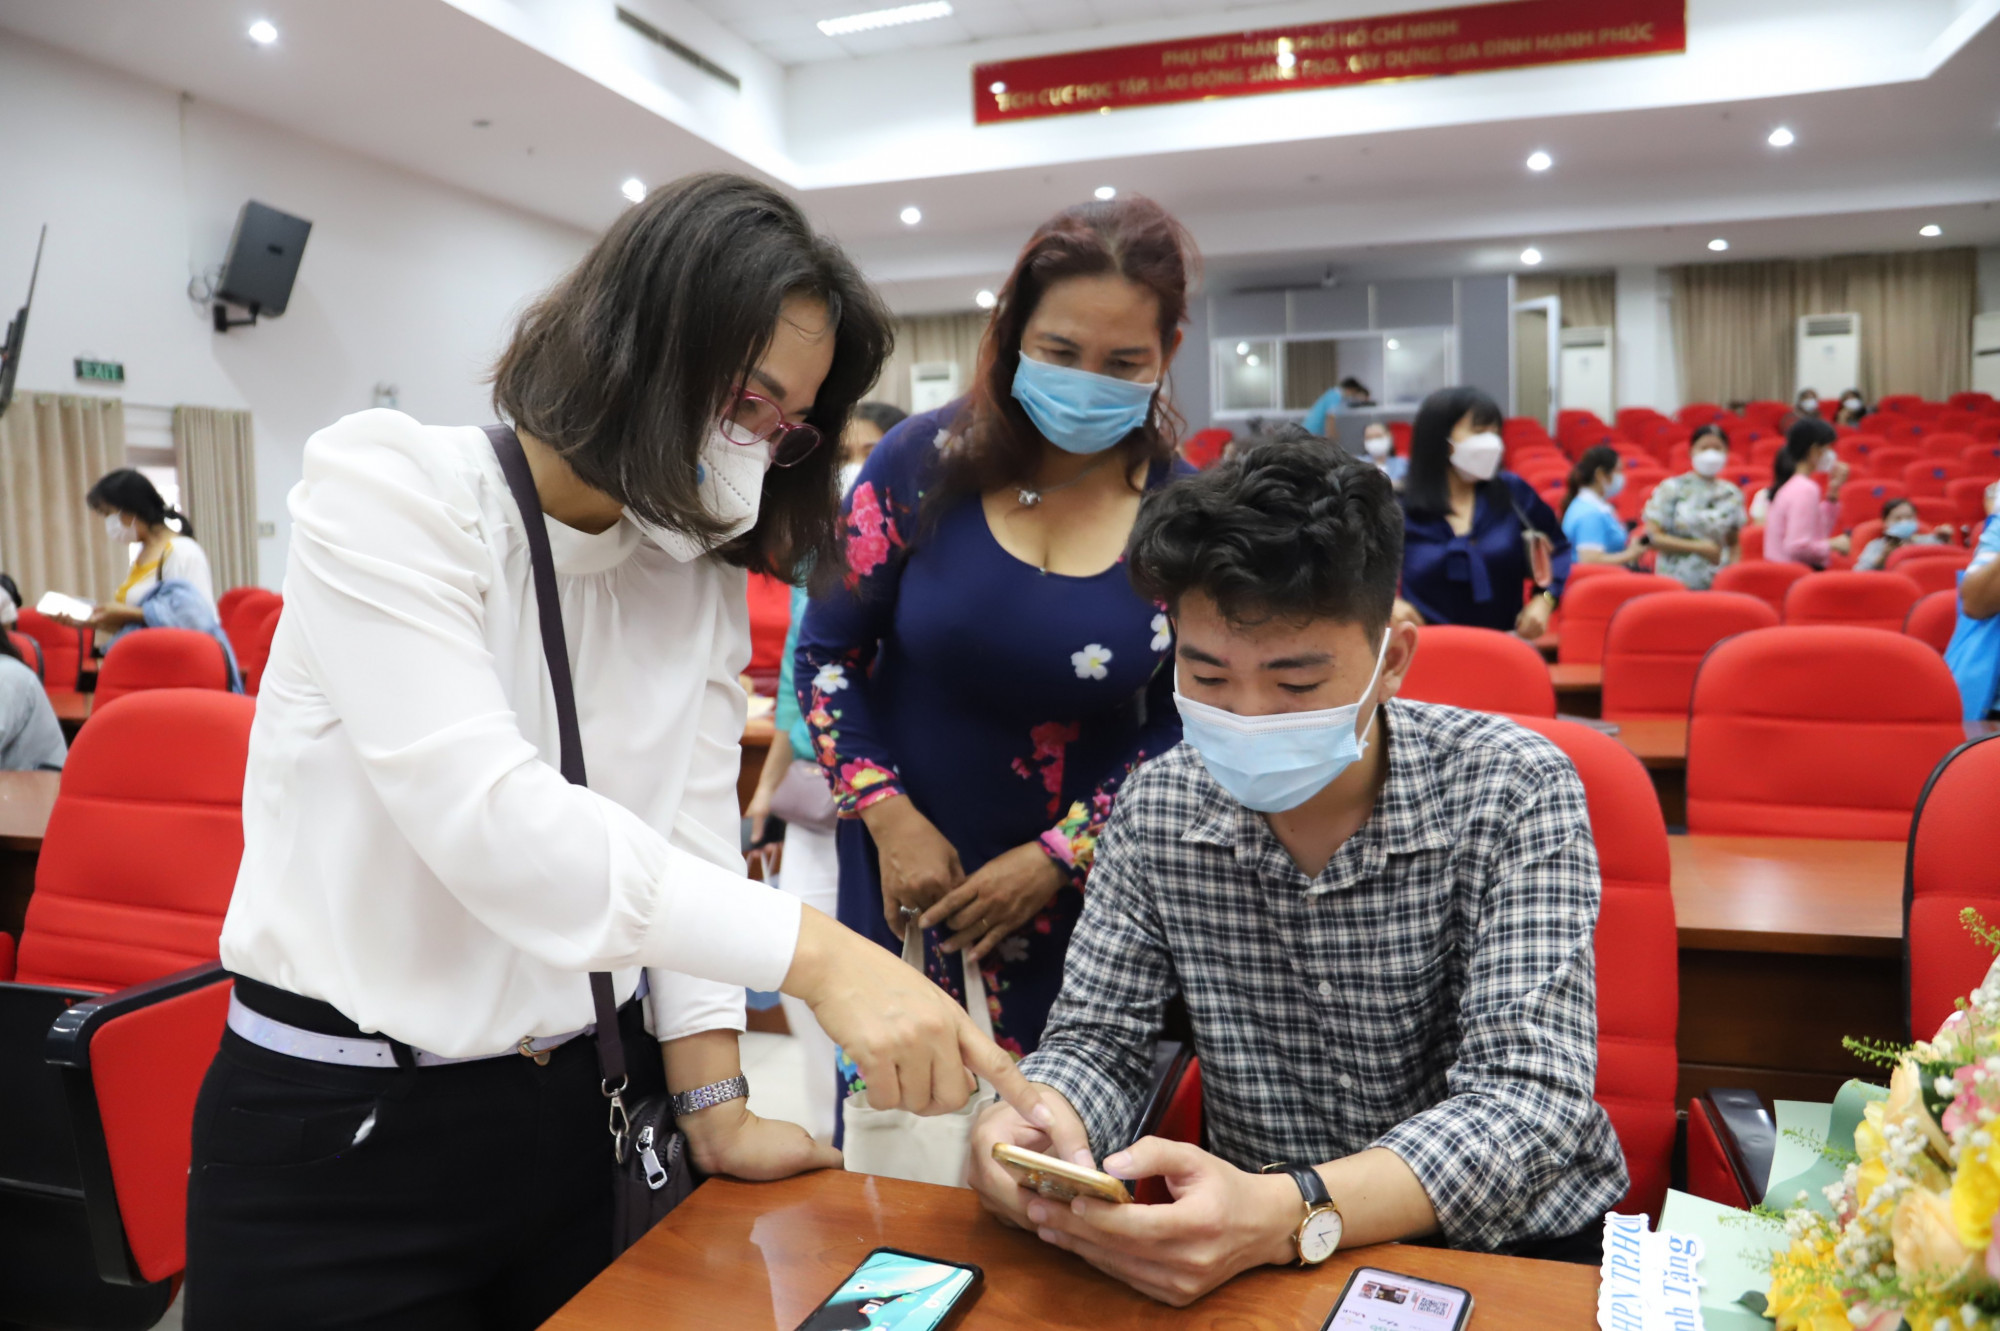 Đây là chương trình hợp tác giữa Hội LHPN Việt Nam và Công ty trách nhiệm hữu hạn Unilever Việt Nam với mong muốn hỗ trợ nâng cao quyền năng cho phụ nữ góp phần thúc đẩy bình đẳng giới, xây dựng gia đình hạnh phúc